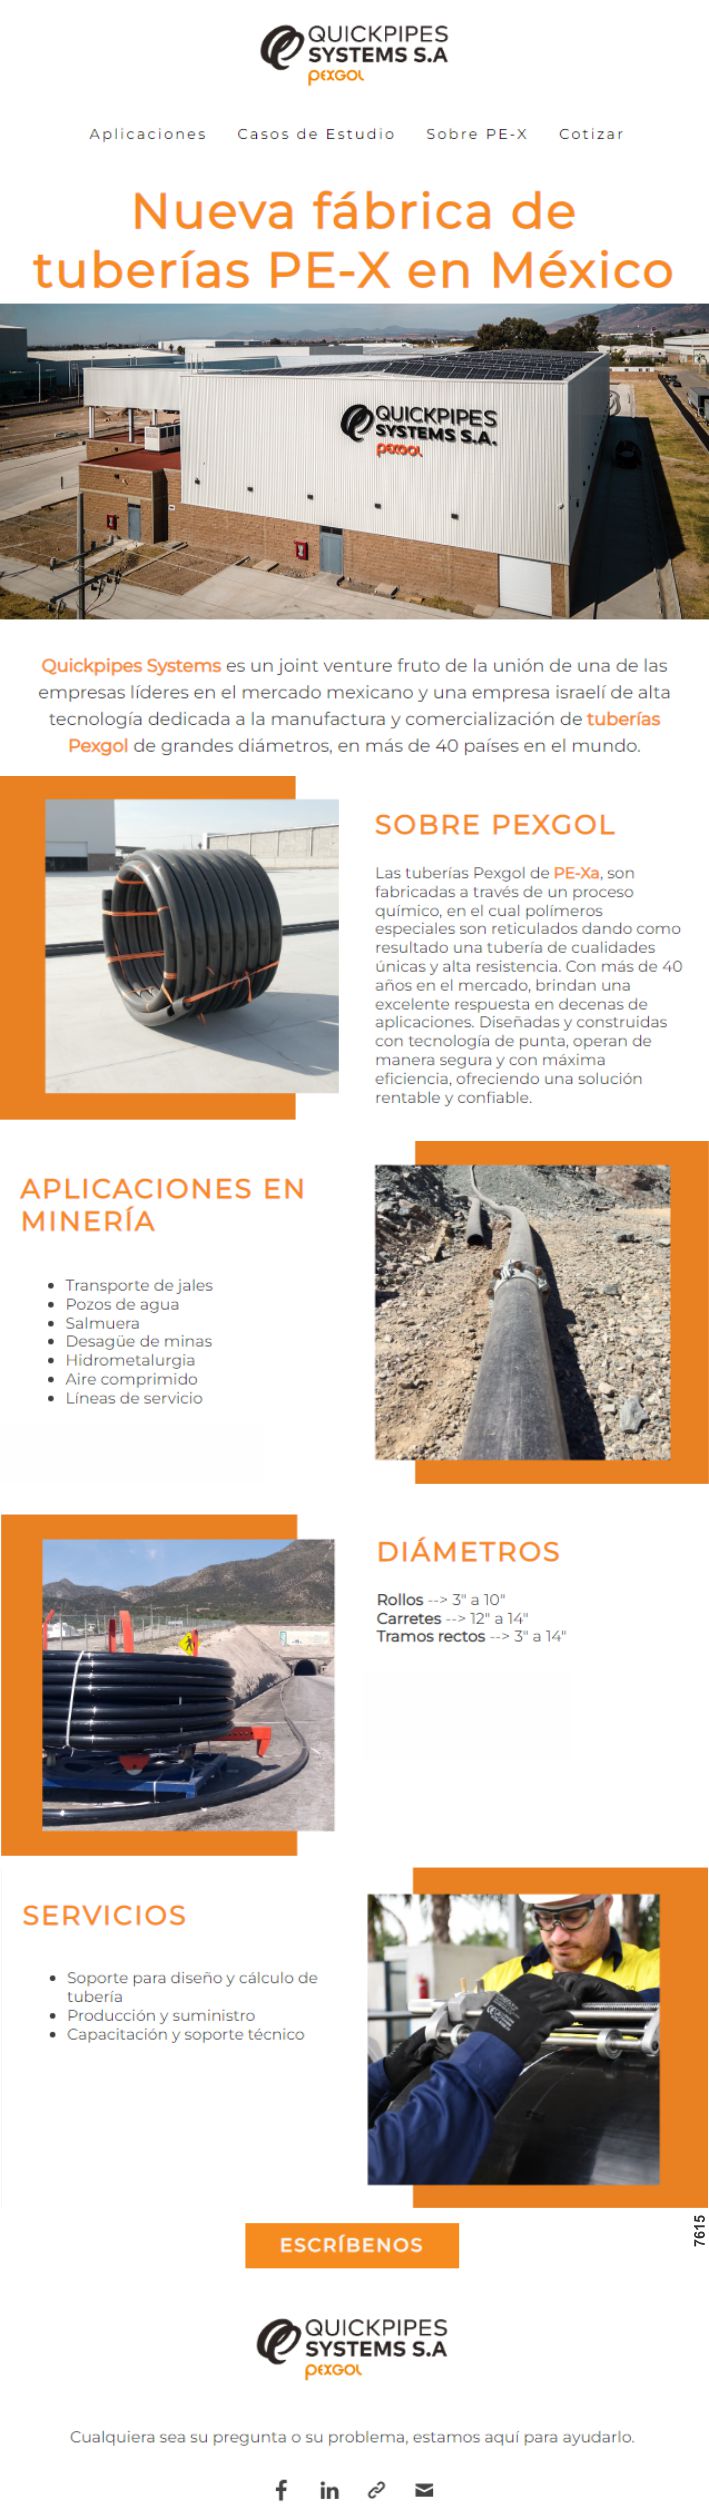 Nueva fabrica de tuberias PE-X en Mexico. Quickpipes Systems es un joint venture de alta tecnologia dedicada a la manufactura y comercializacion de tuberias Pexgol de grandes diametros.